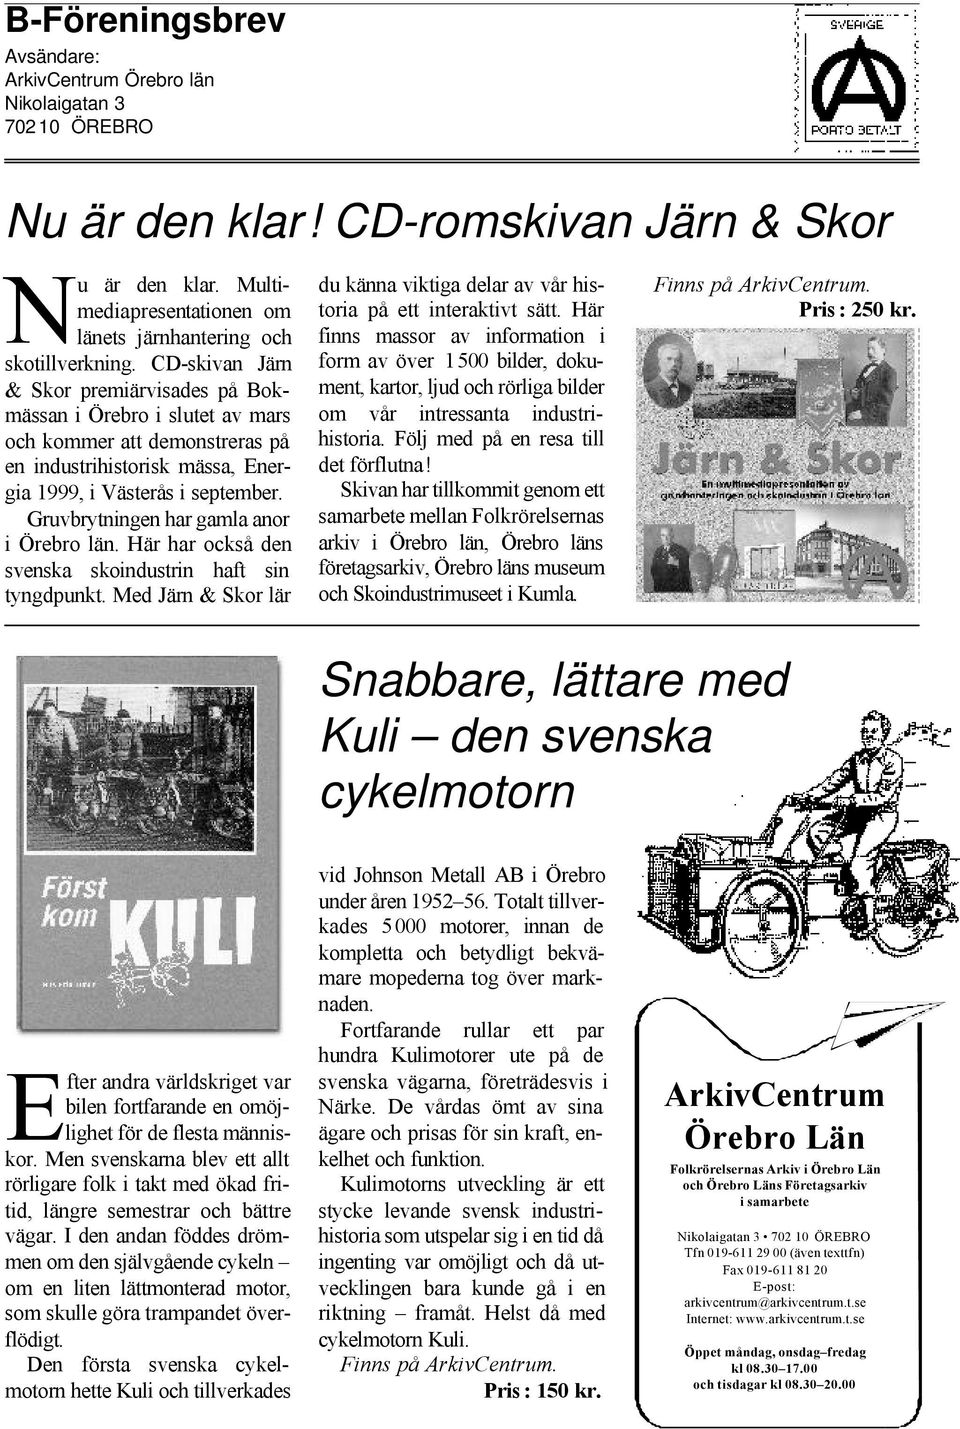 CD-skivan Järn & Skor premiärvisades på Bokmässan i Örebro i slutet av mars och kommer att demonstreras på en industrihistorisk mässa, Energia 1999, i Västerås i september.